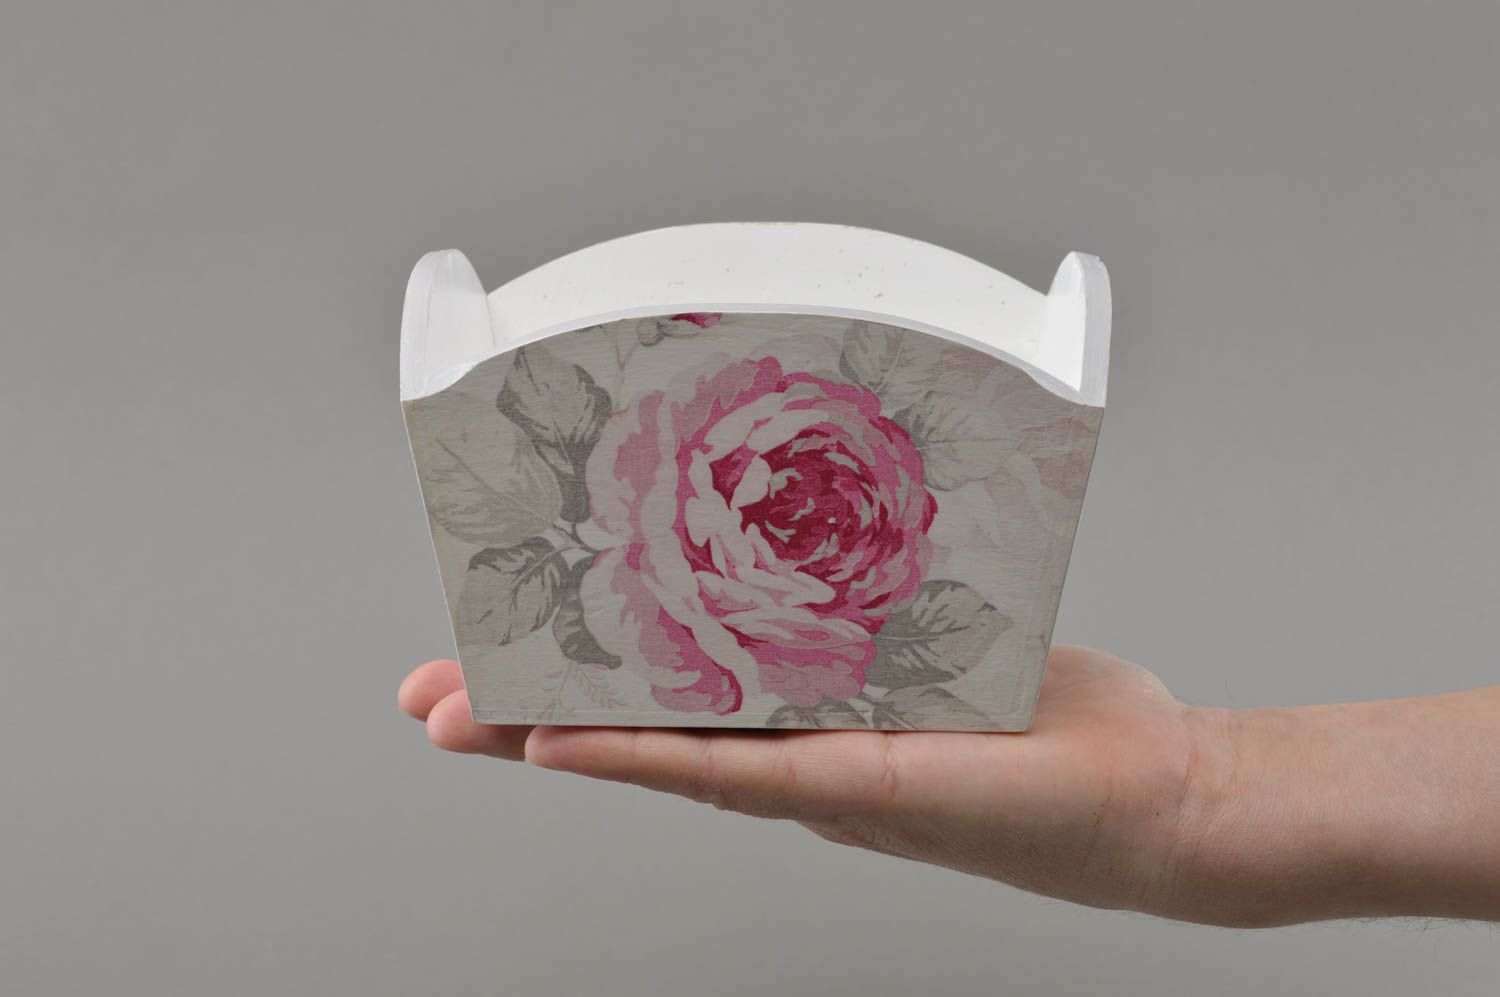 Авторская конфетница в технике декупаж из фанеры с рисунком роз ручной работы фото 4